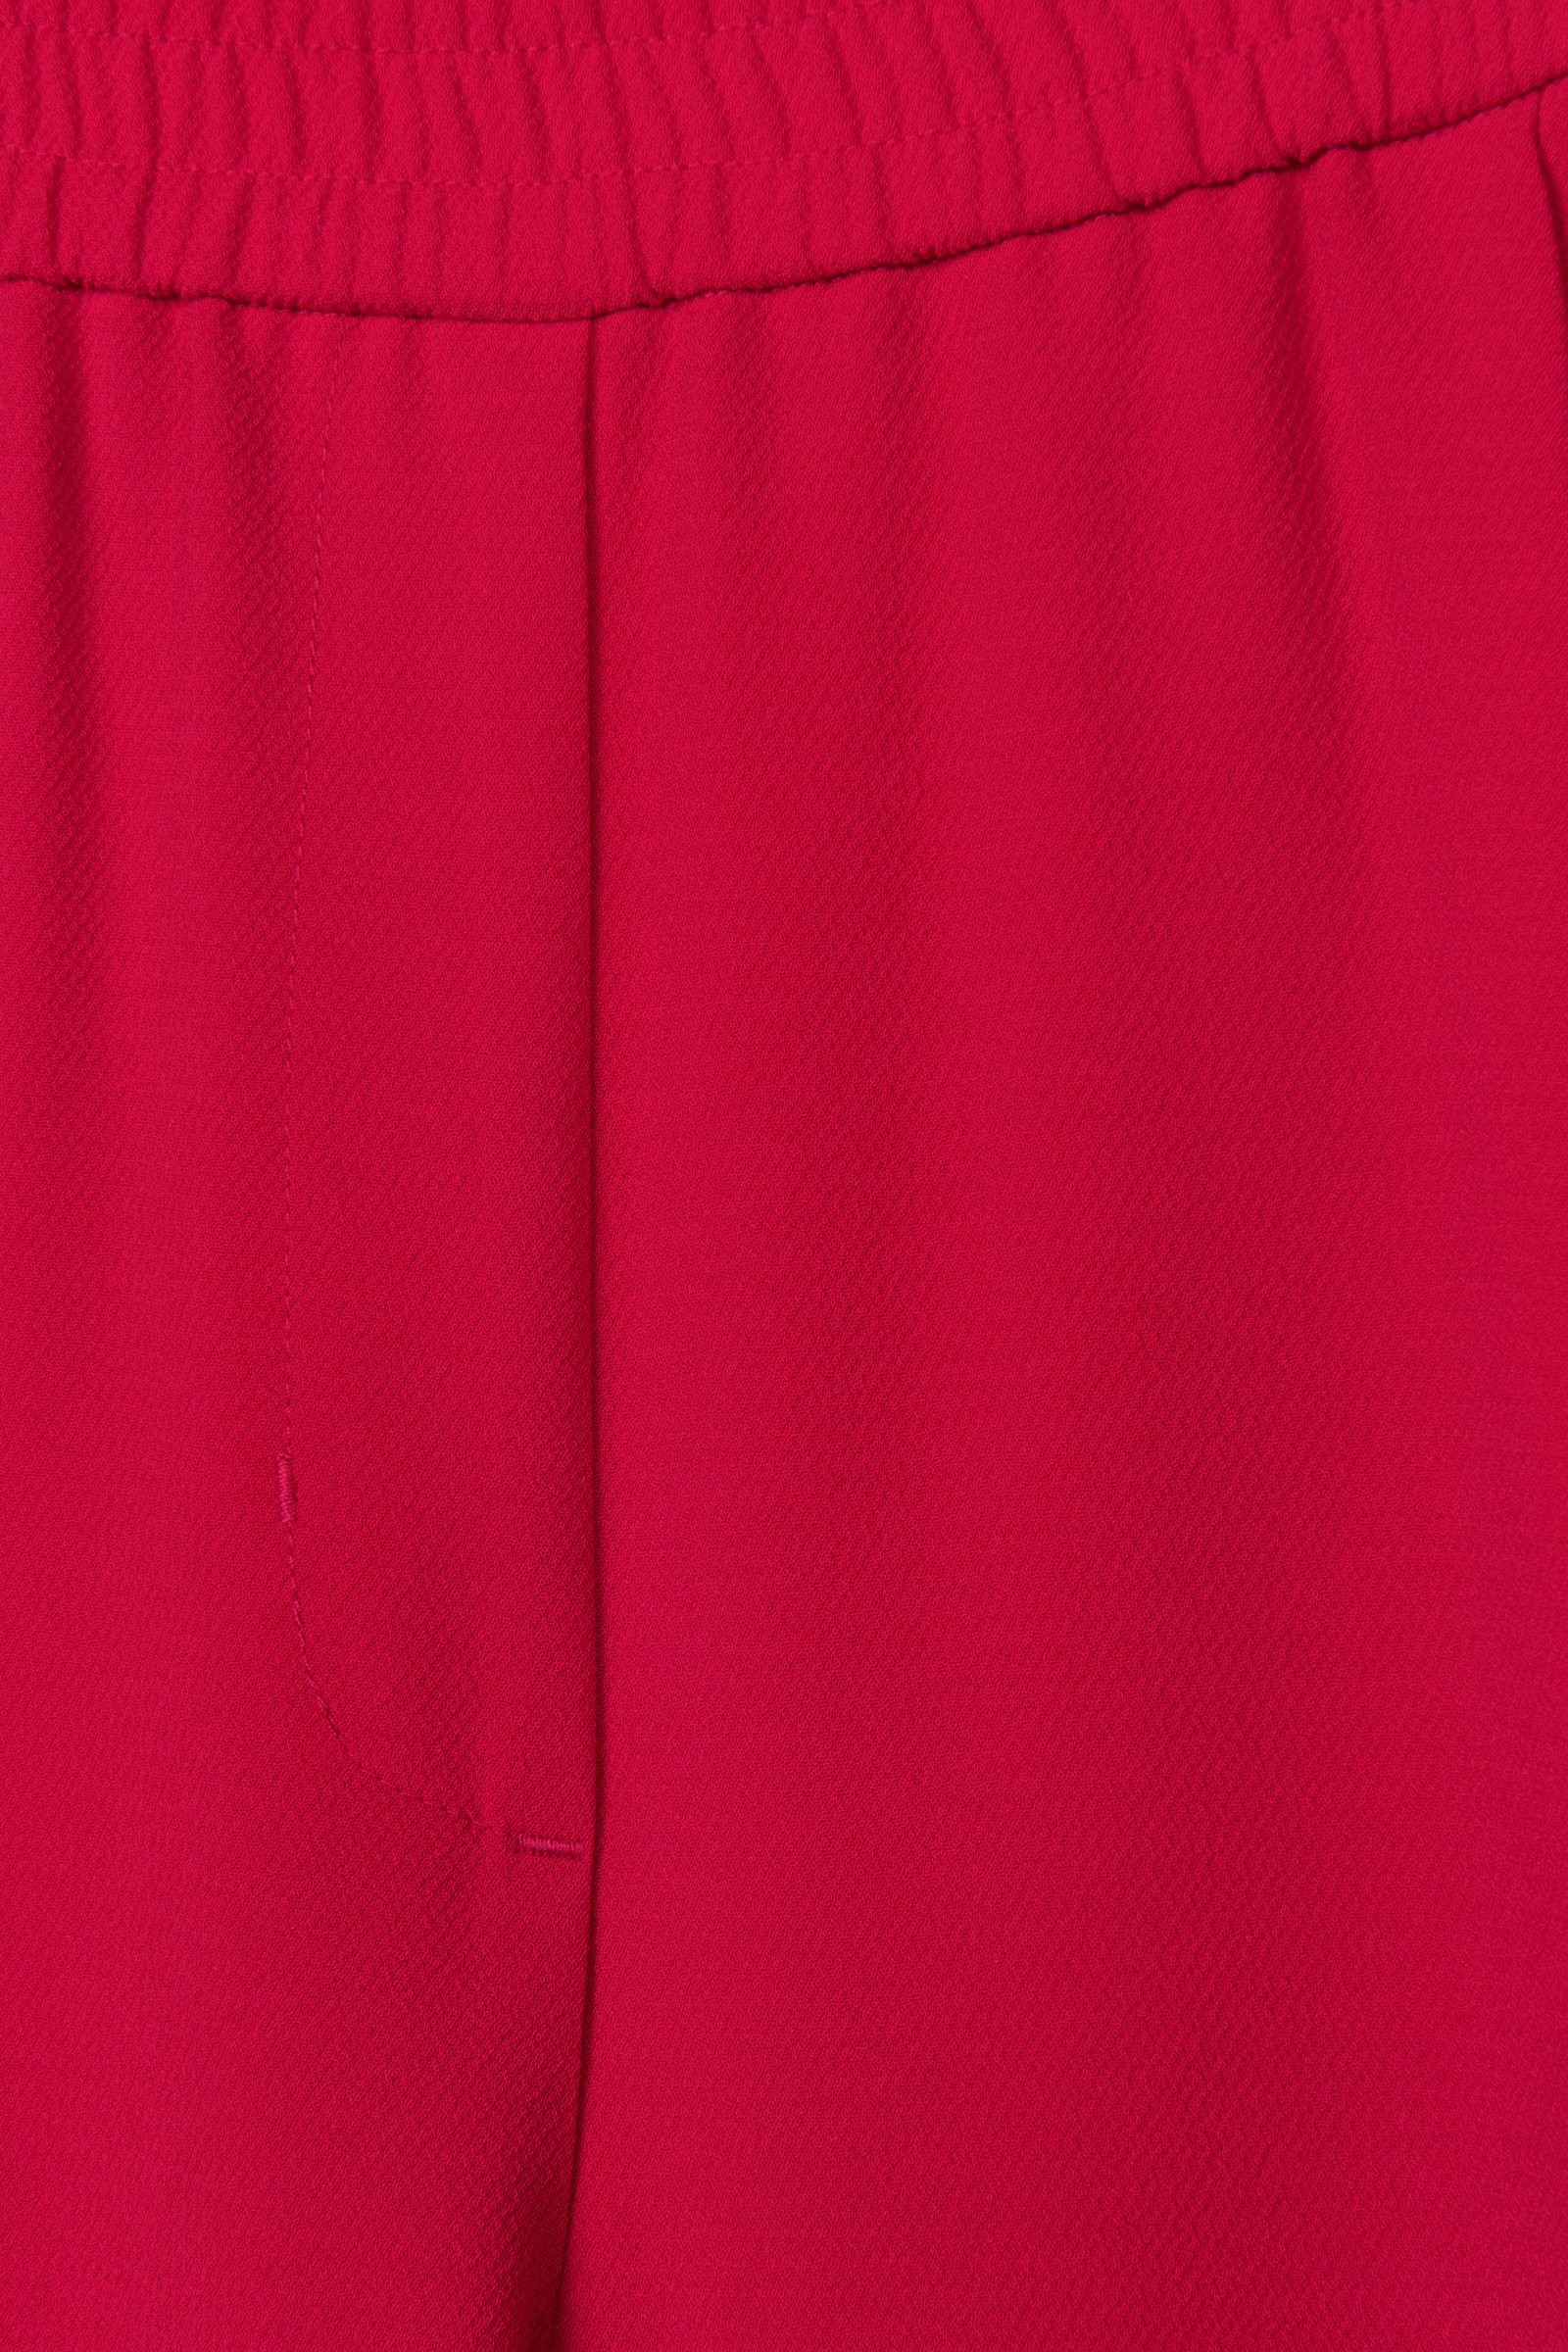 CKS Dames - SAIGOS - pantalon long - rouge vif